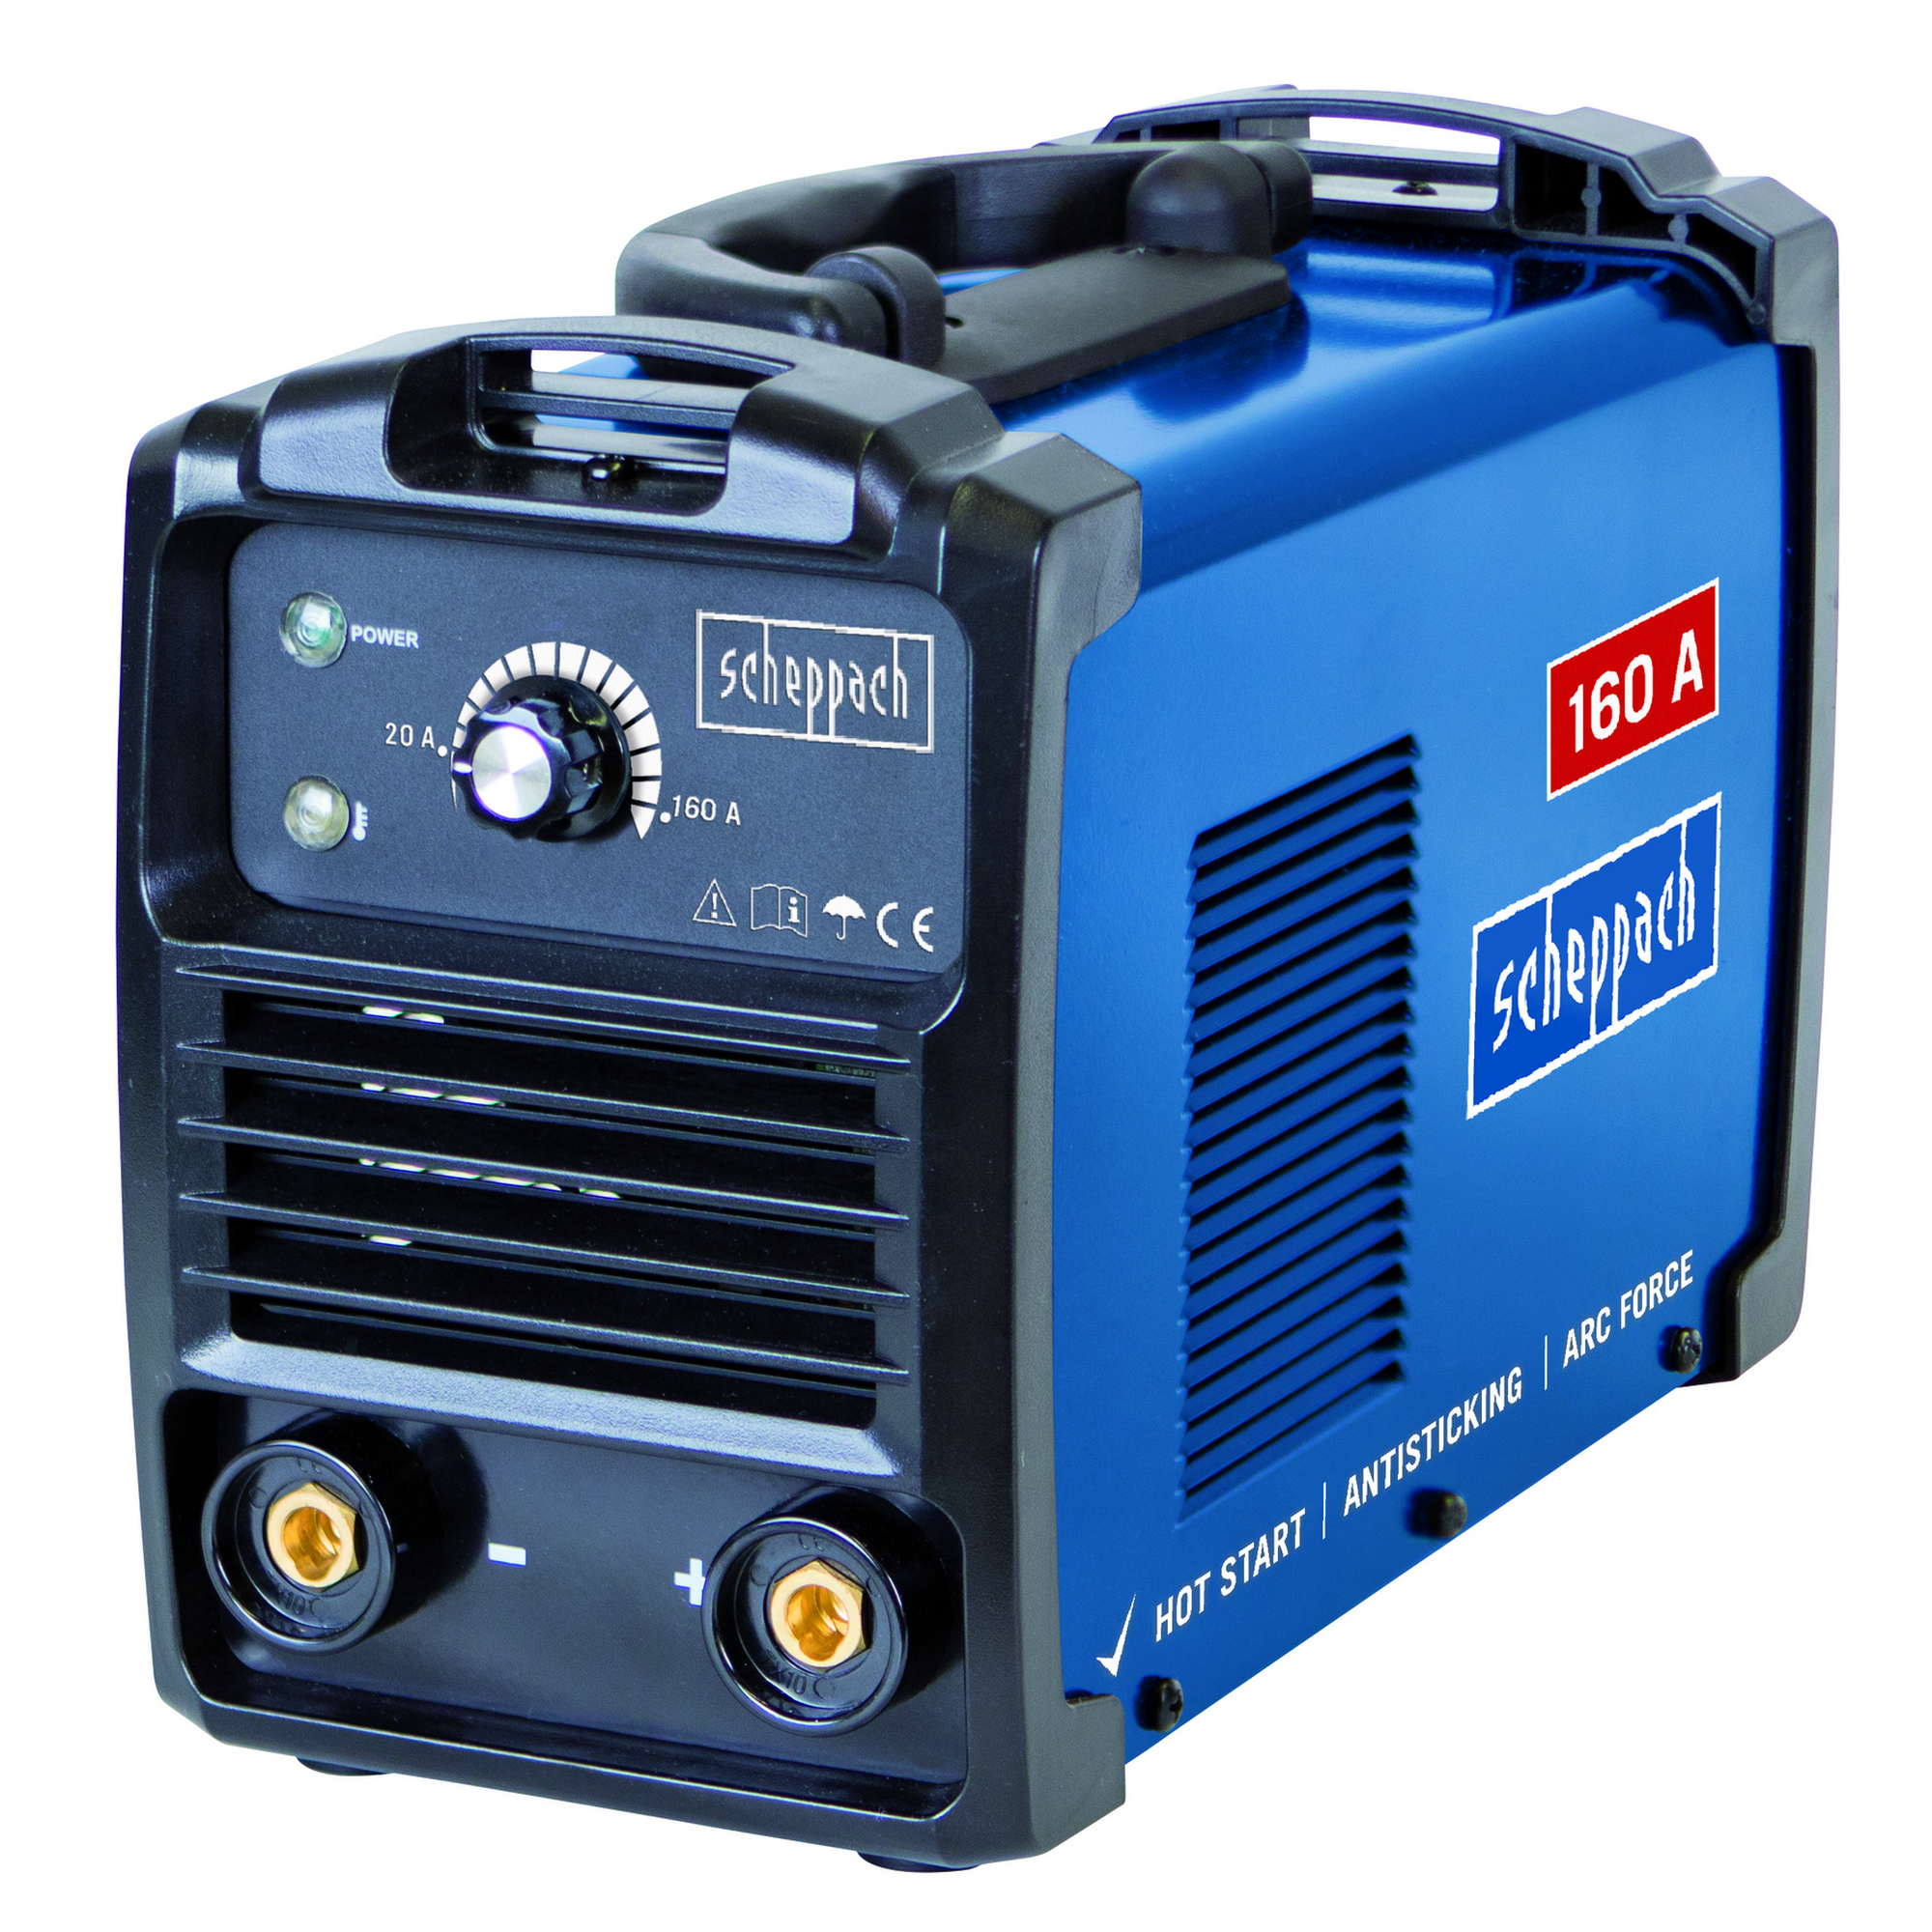 Inverter-Schweißgerät 'WSE900' blau/schwarz 230 V, 20-160 A + product picture